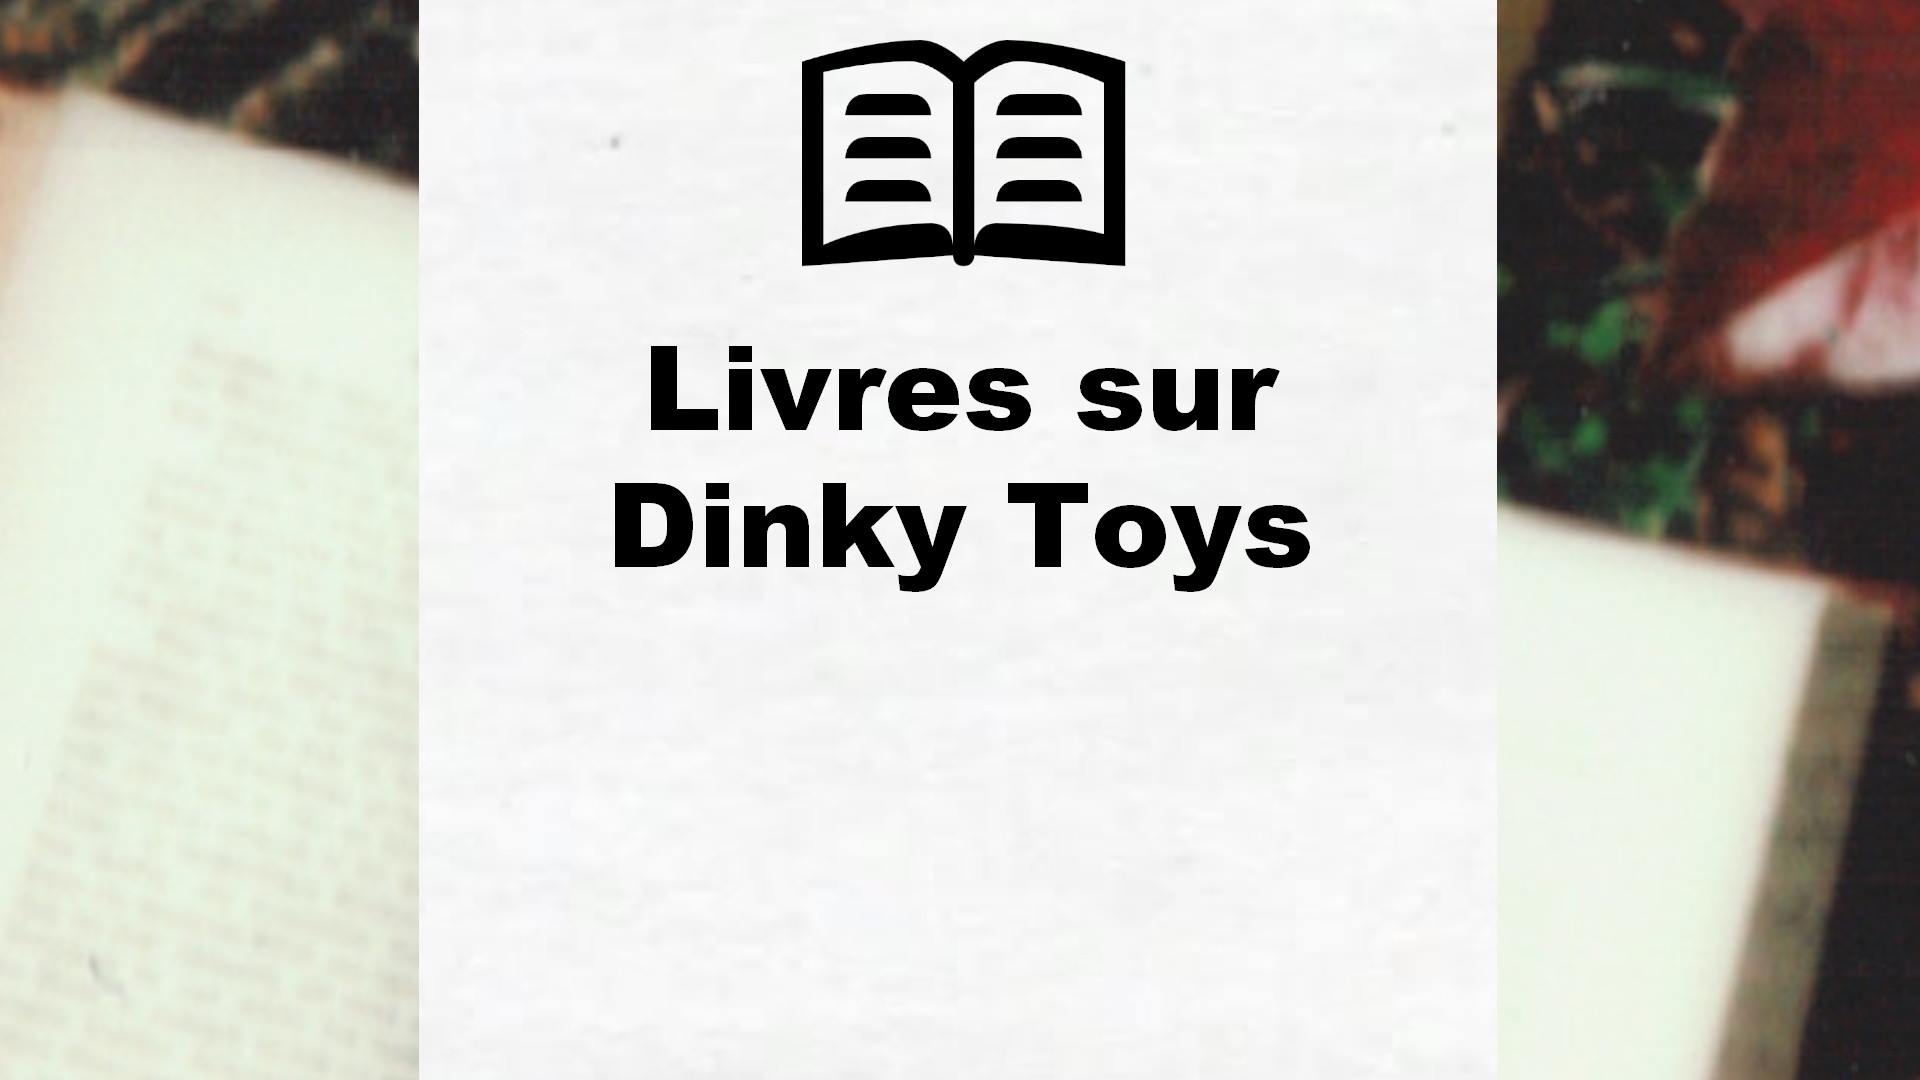 Livres sur Dinky Toys